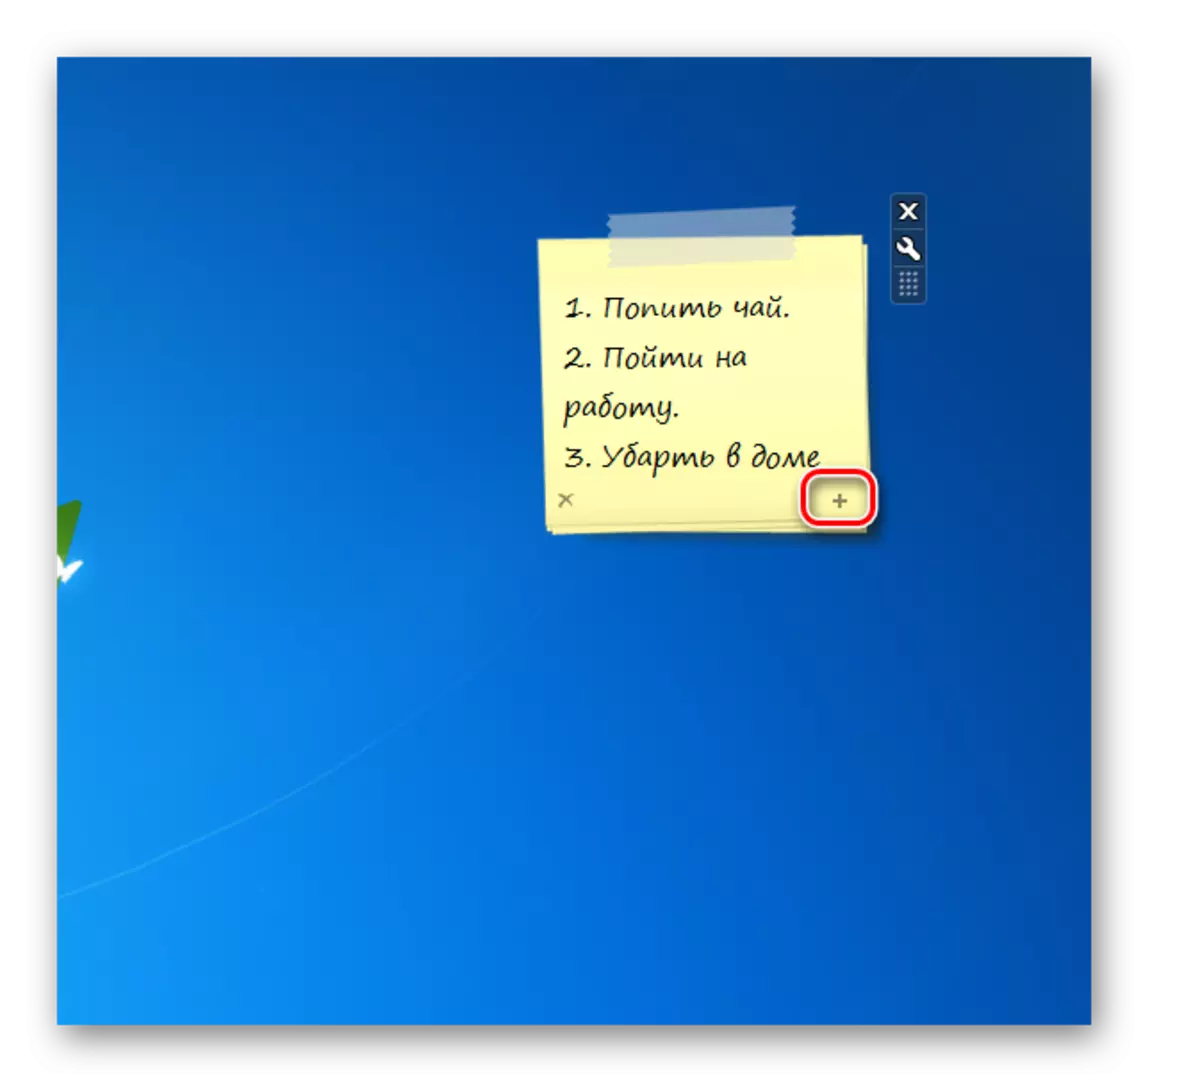 Ag cruthú an chéad leathanach eile sa Chomhéadan Gadget Gadget Notencolour Chameleon ar an deasc i Windows 7